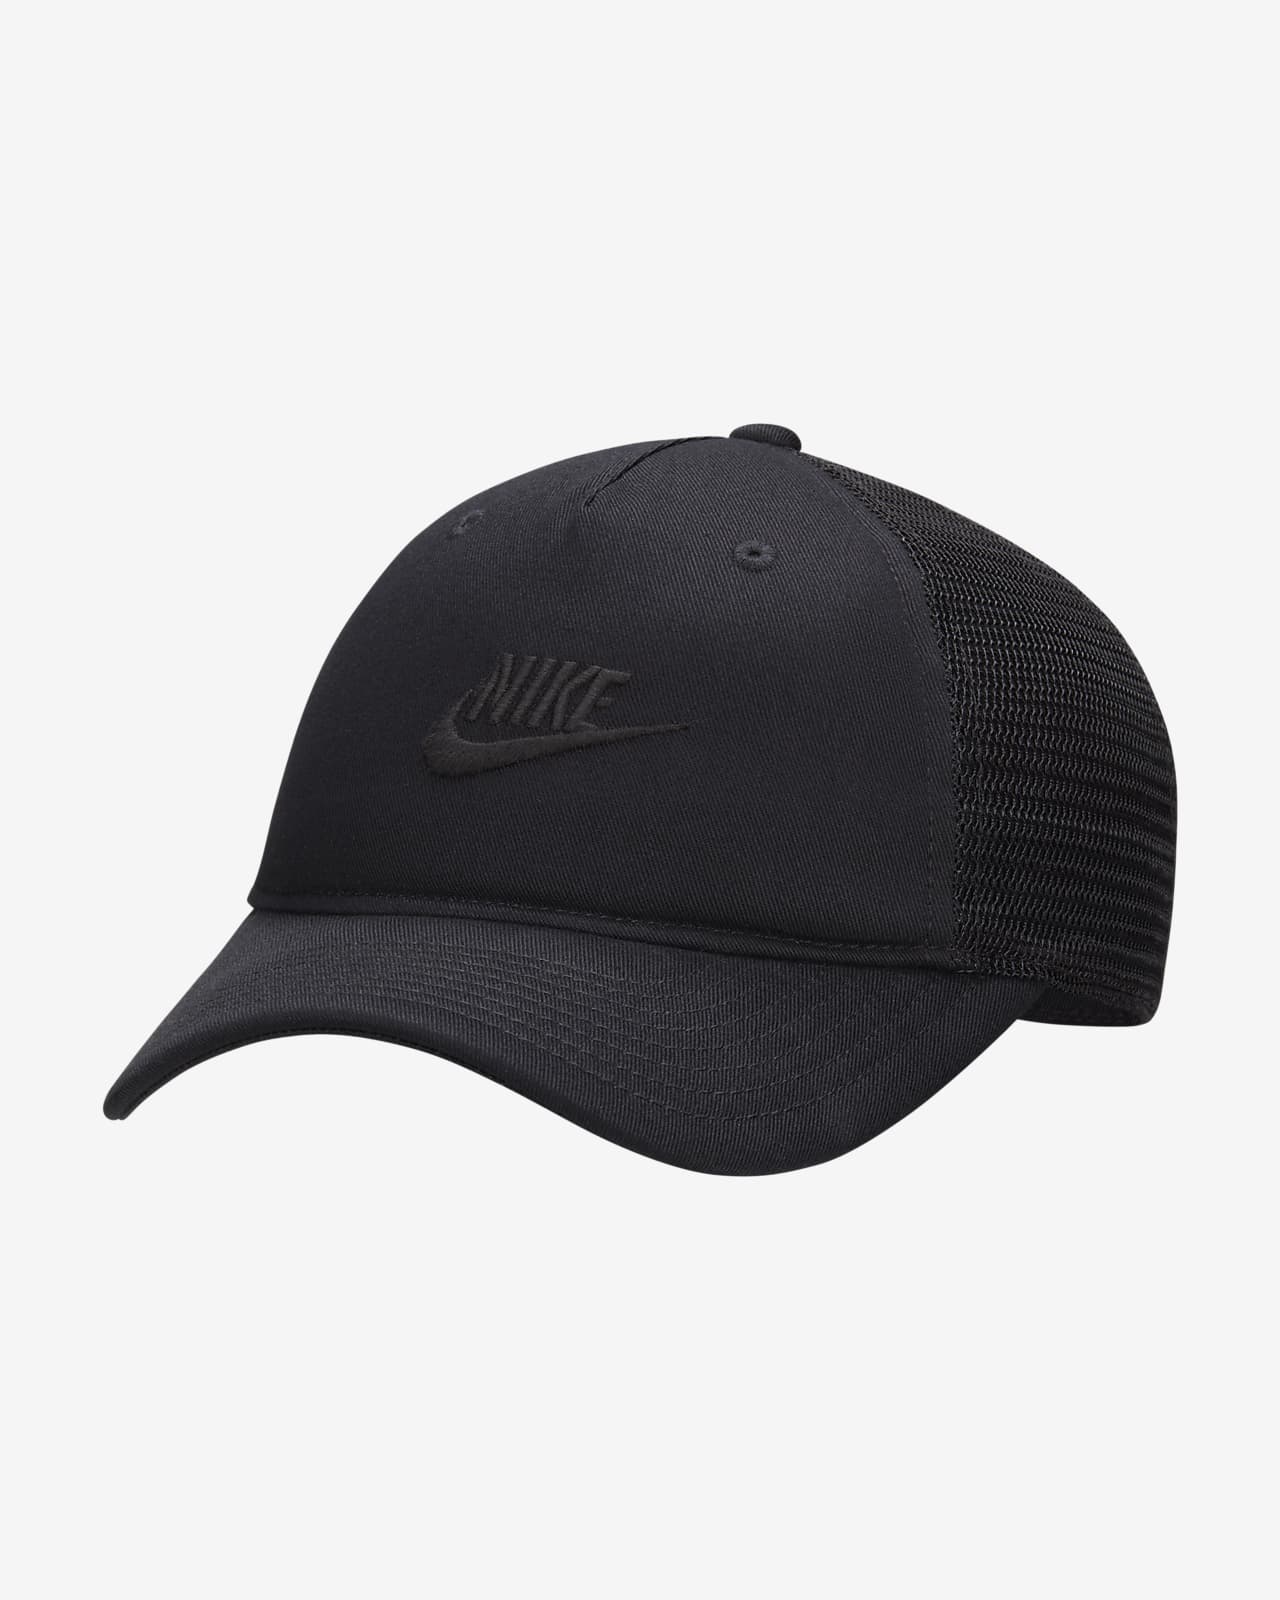 Nike Rise Cap Structured Trucker Cap